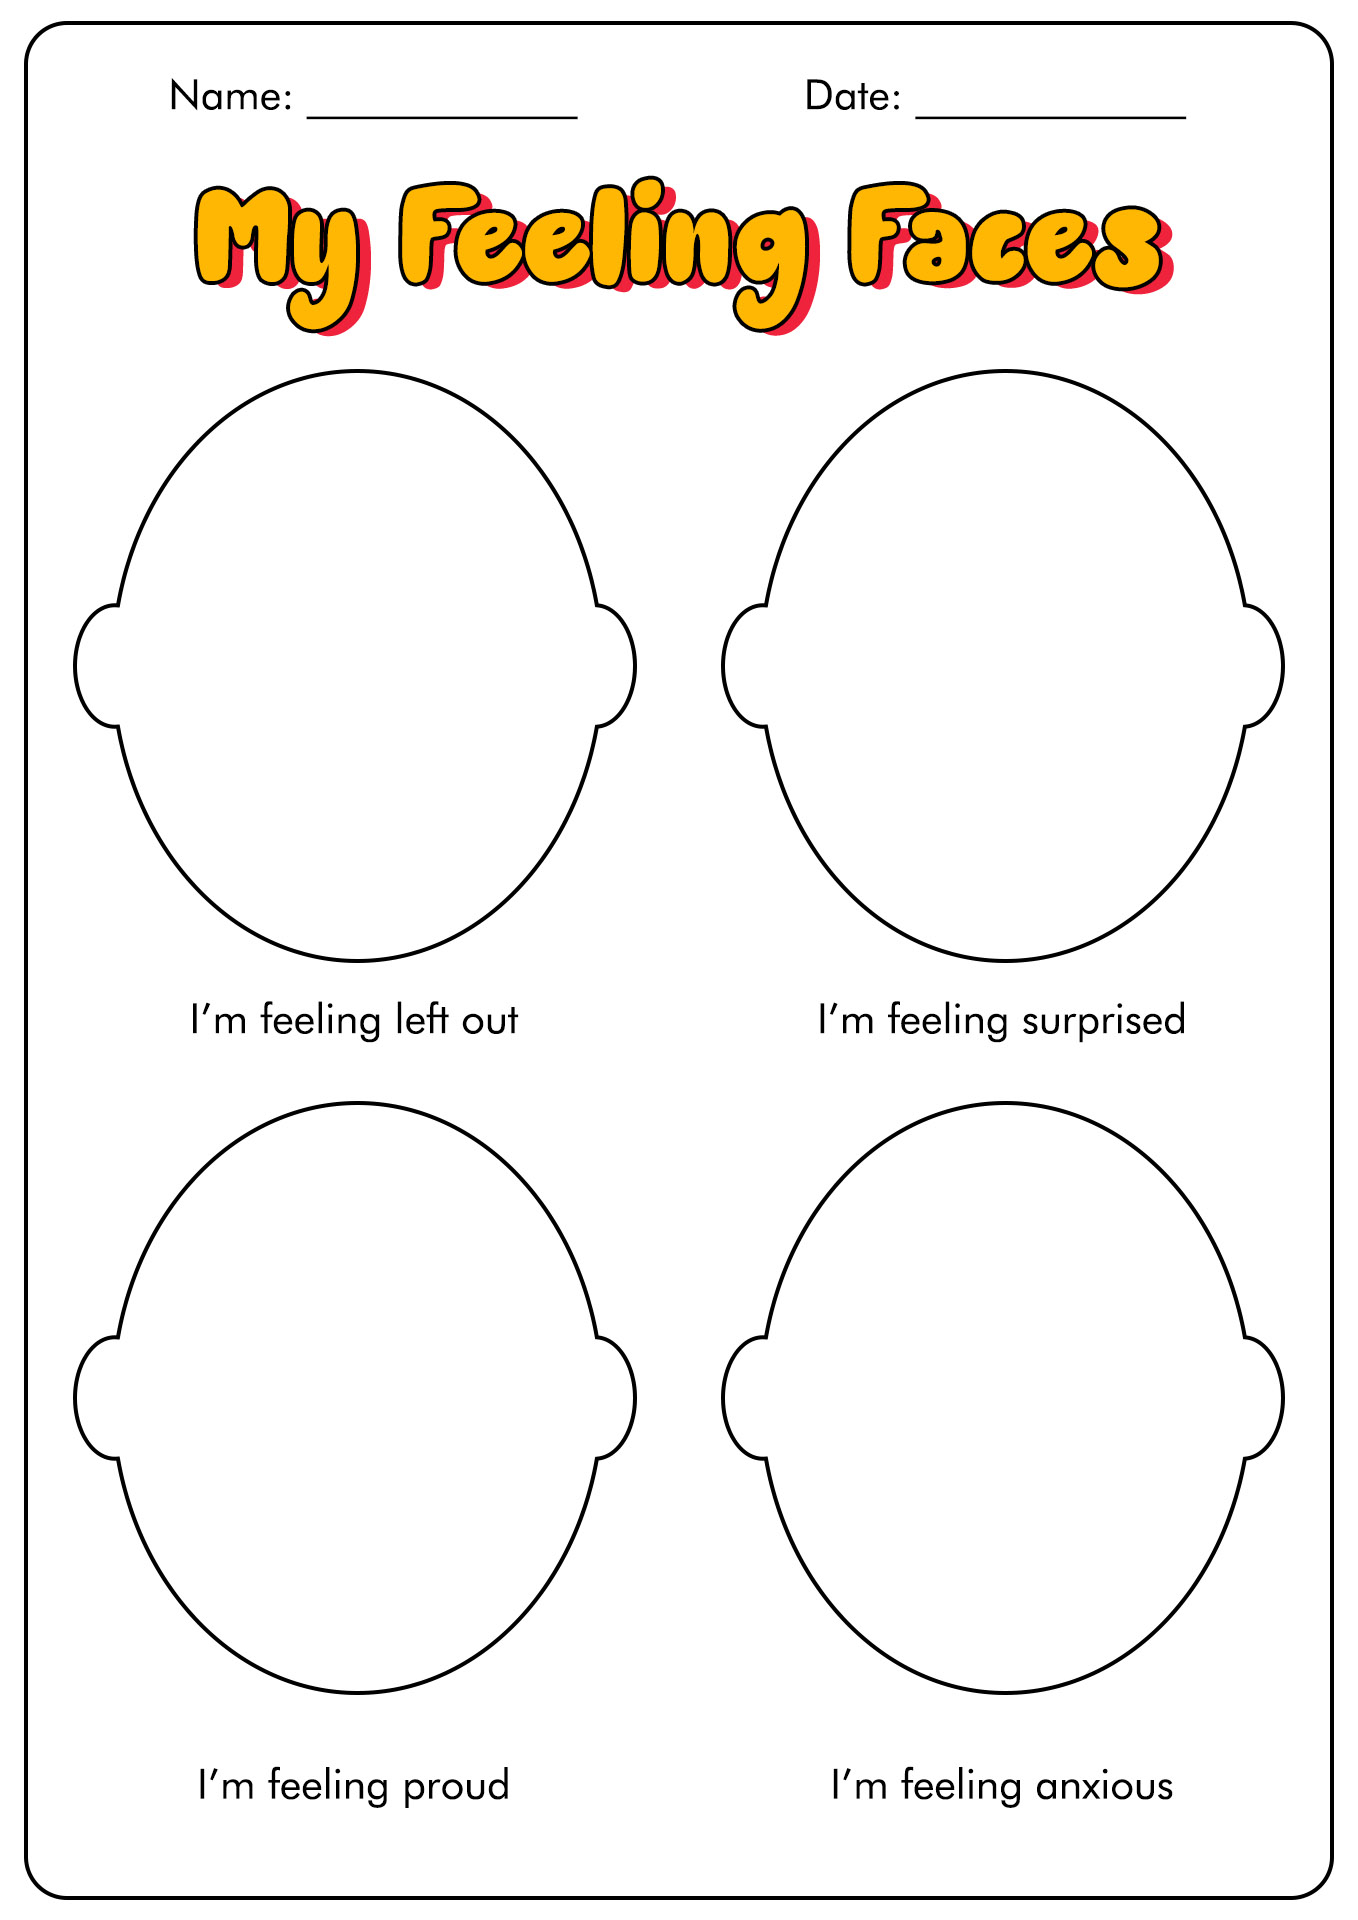 13 Best Images of What Are Feelings Worksheets - PDF Feelings